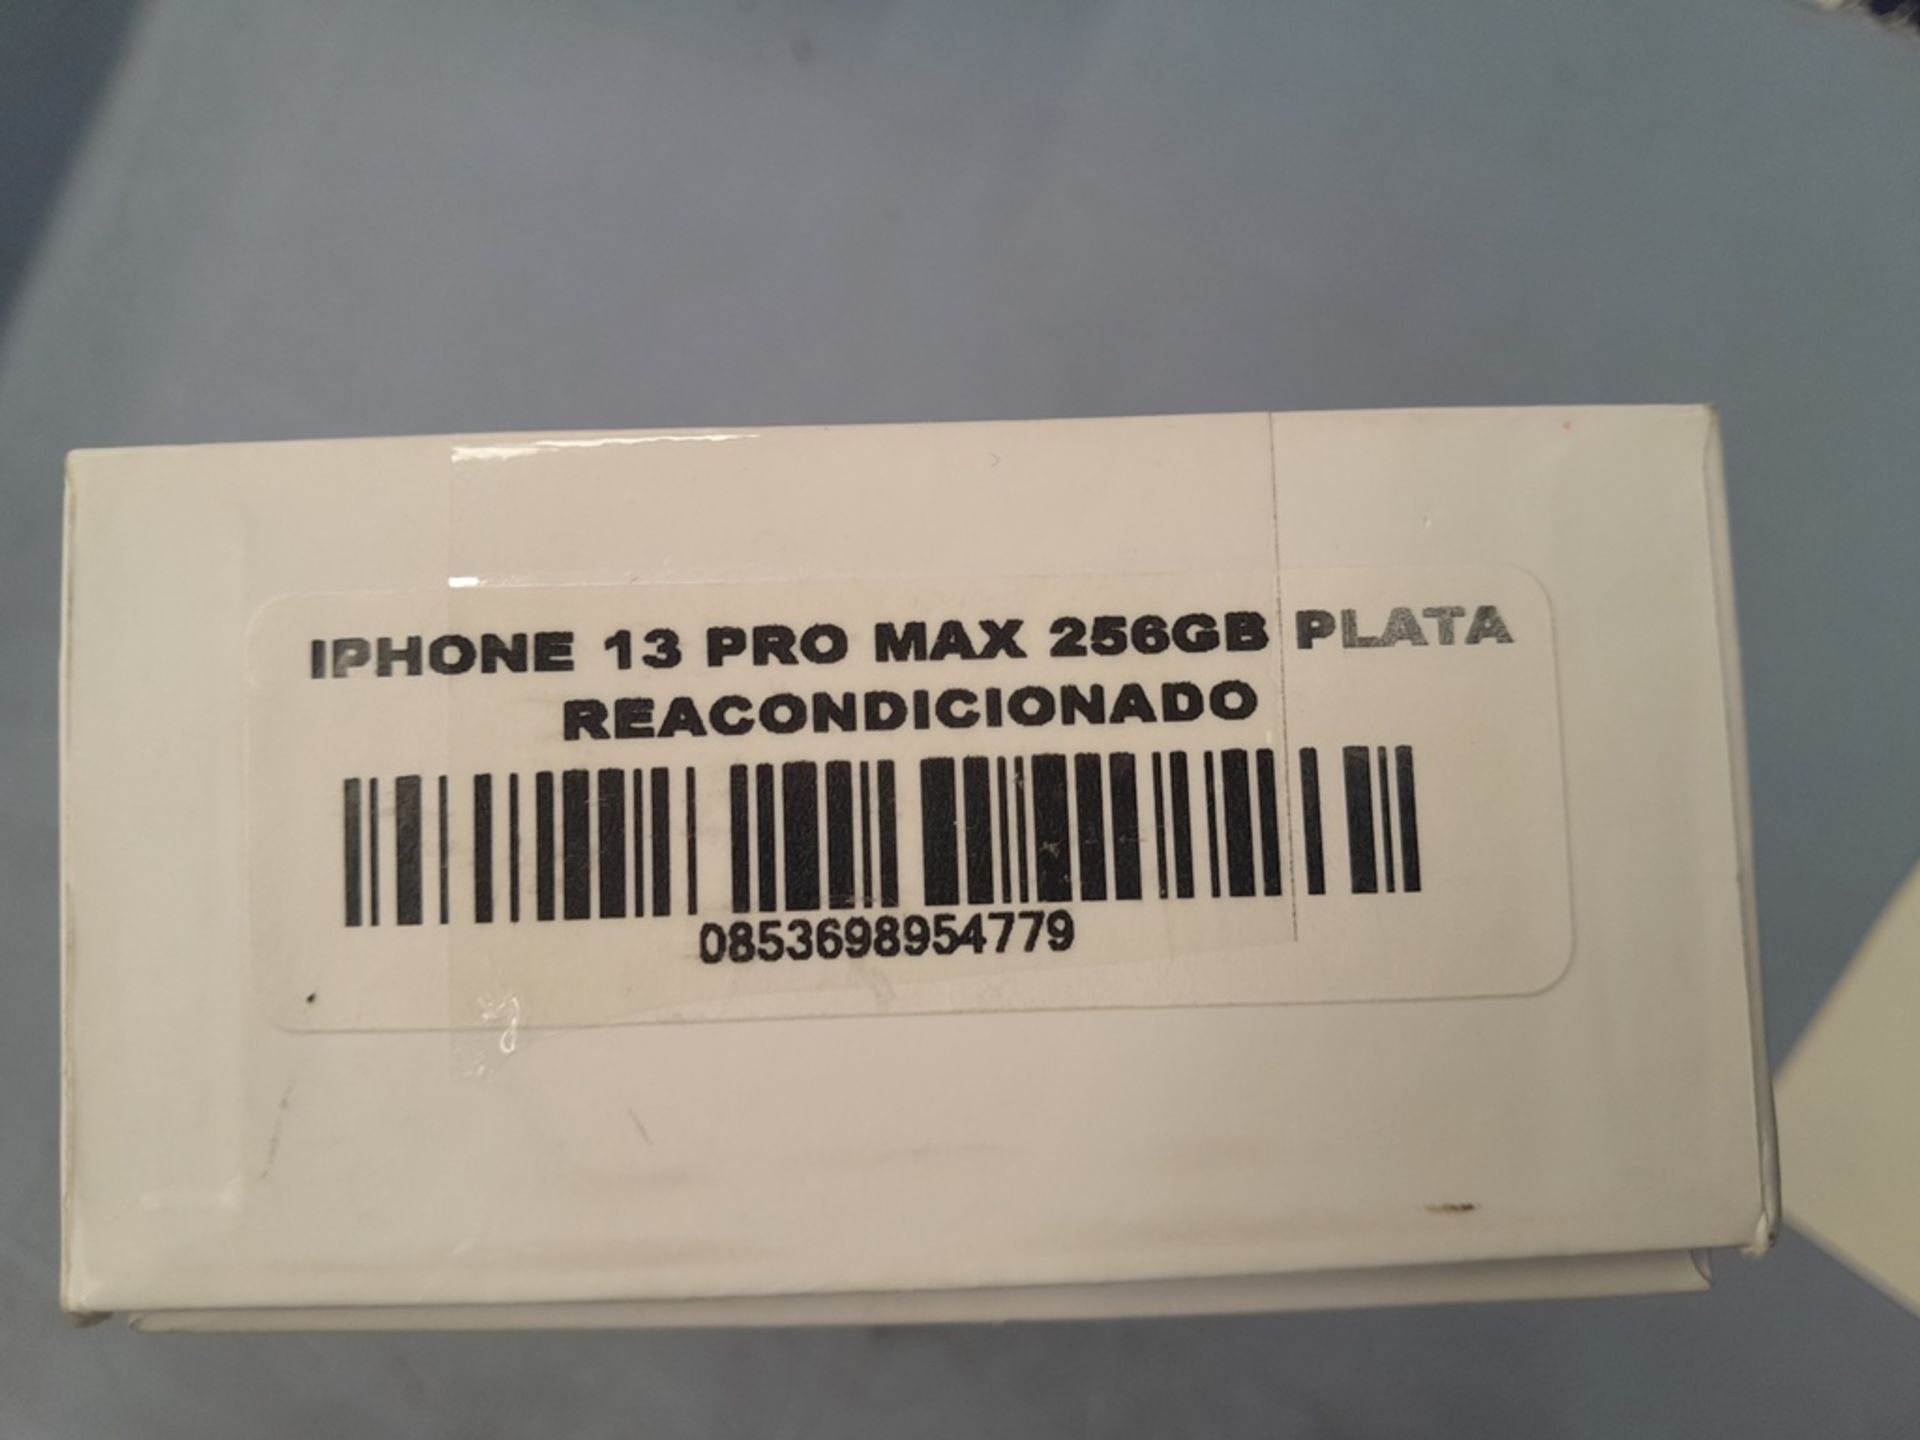 Lote de 2 celulares contiene: 1 iPhone 13 PRO MAX, de 256 GB color PLATA (no enciende); 1 iPhone 13 - Image 4 of 5